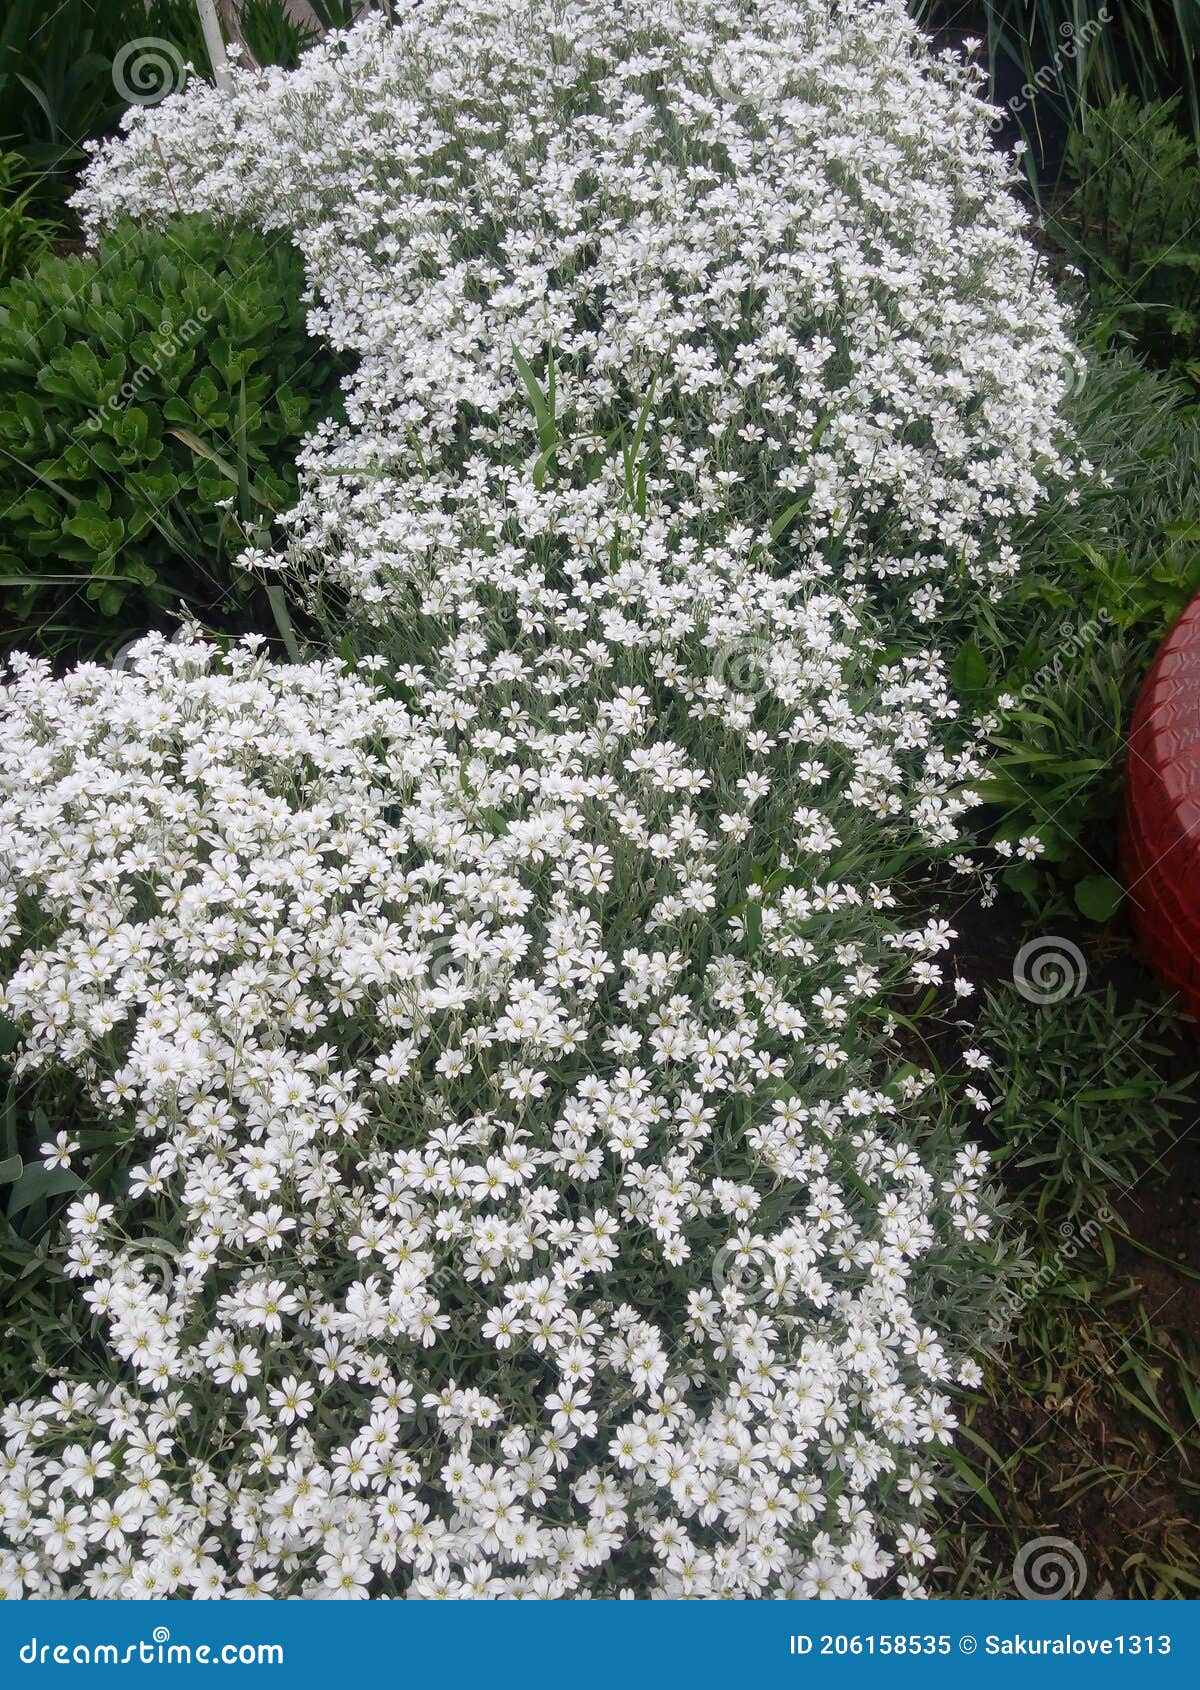 snow white flower is the snow in-summer flowers also called cerastium tomentosum